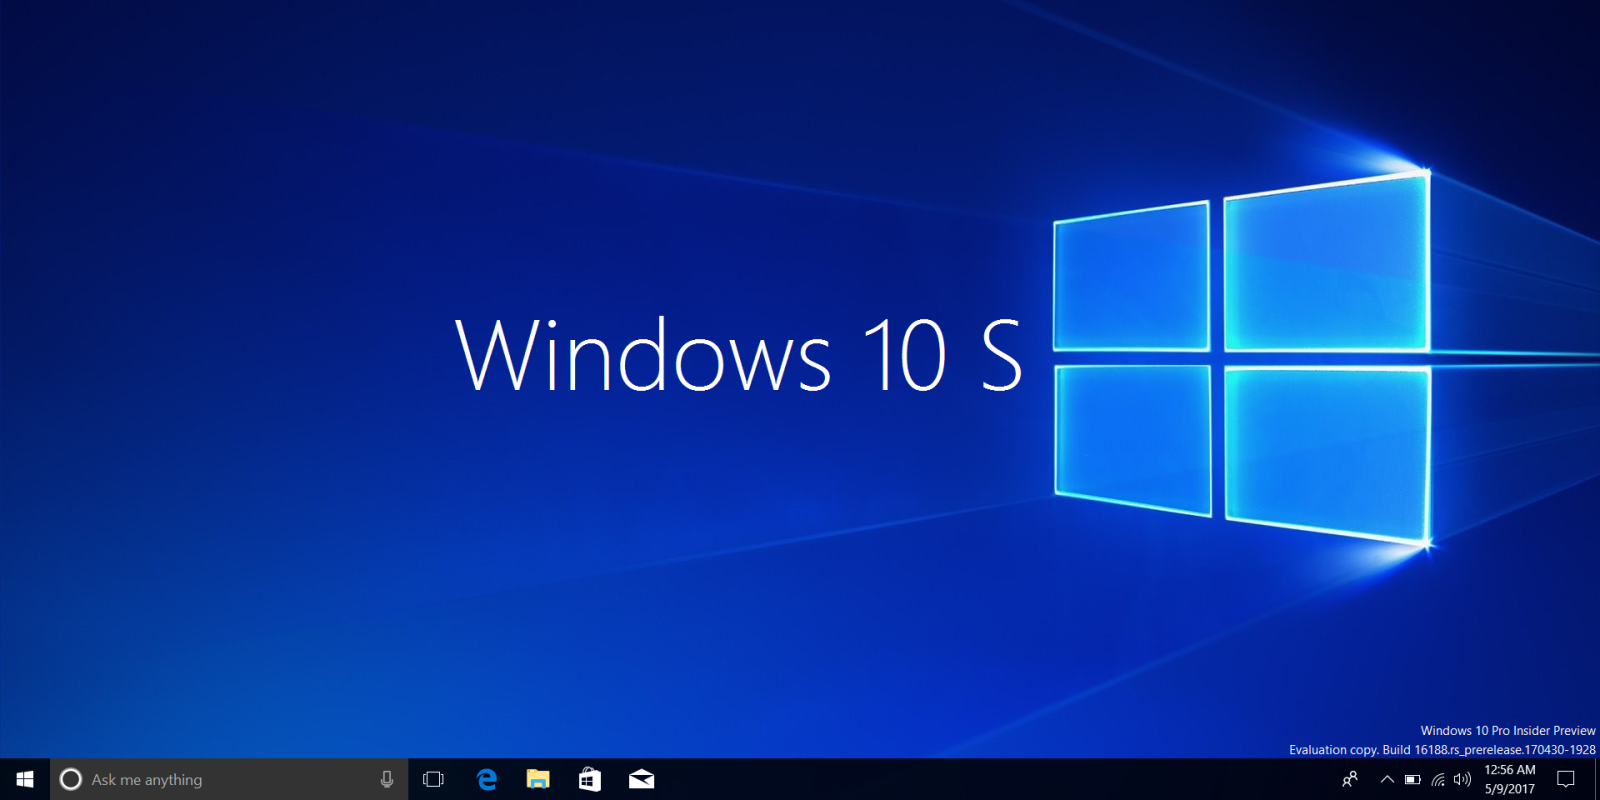 Bạn muốn tải ISO Windows 10 S để trải nghiệm hệ điều hành mới nhất? Đừng bỏ lỡ cơ hội cập nhật tính năng tiên tiến và độ ổn định cao của nó! Hãy xem ngay hình ảnh liên quan đến từ khóa này để biết thêm chi tiết nhé.